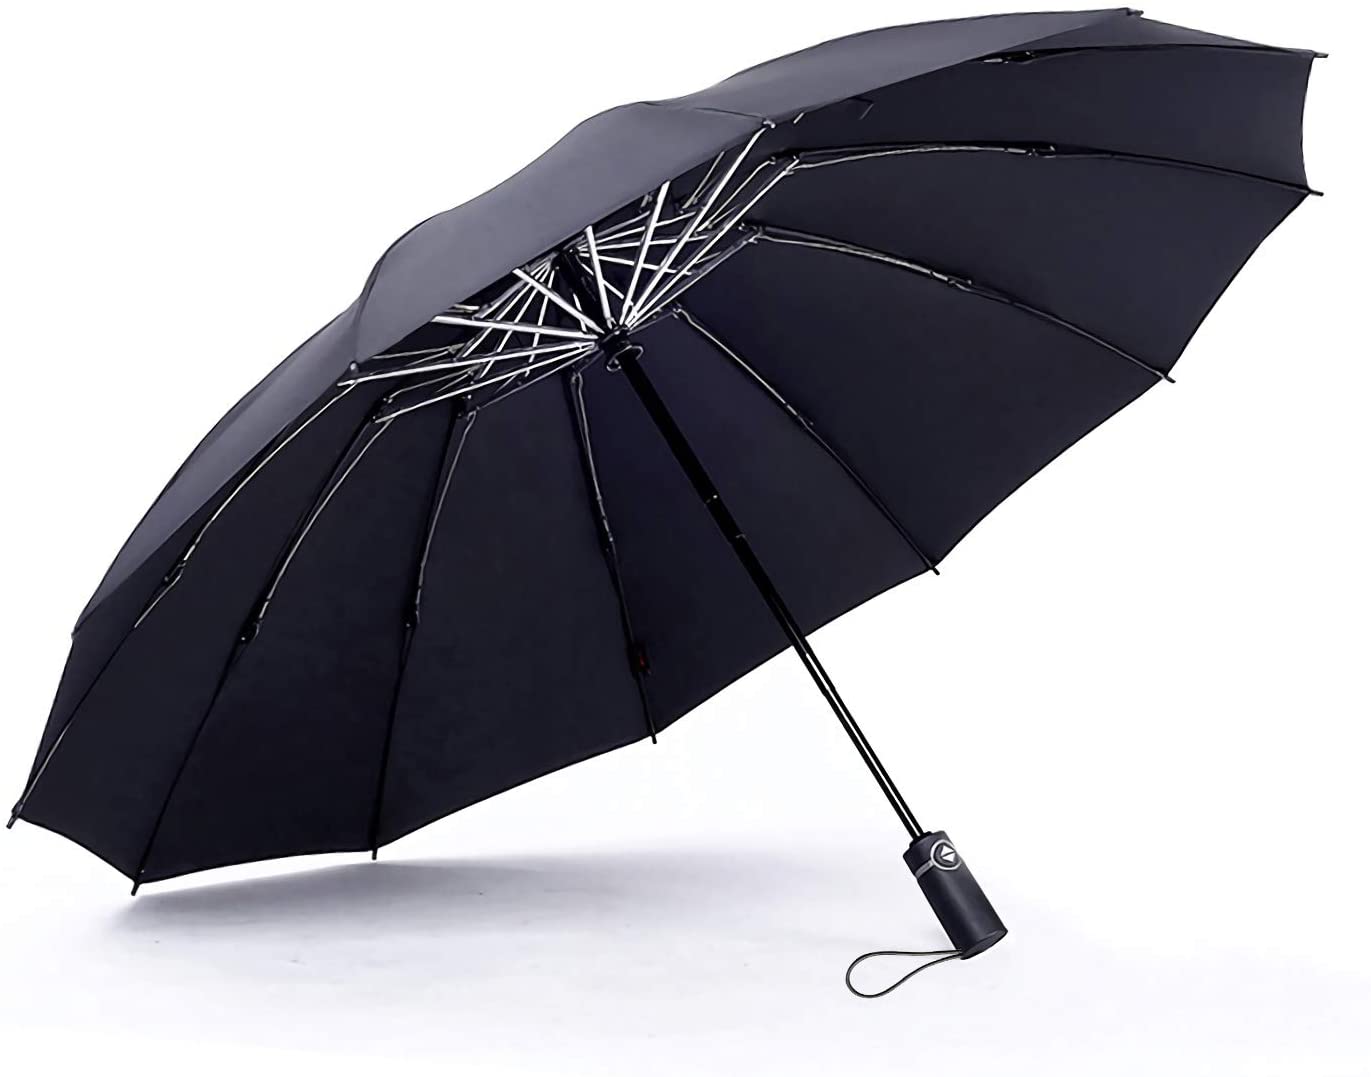 Купить прочный зонтик. Ninetygo Double-layer Windproof Golf Automatic Umbrella Black. Прочный зонт. Зонт крепкий. Самые прочные зонты.